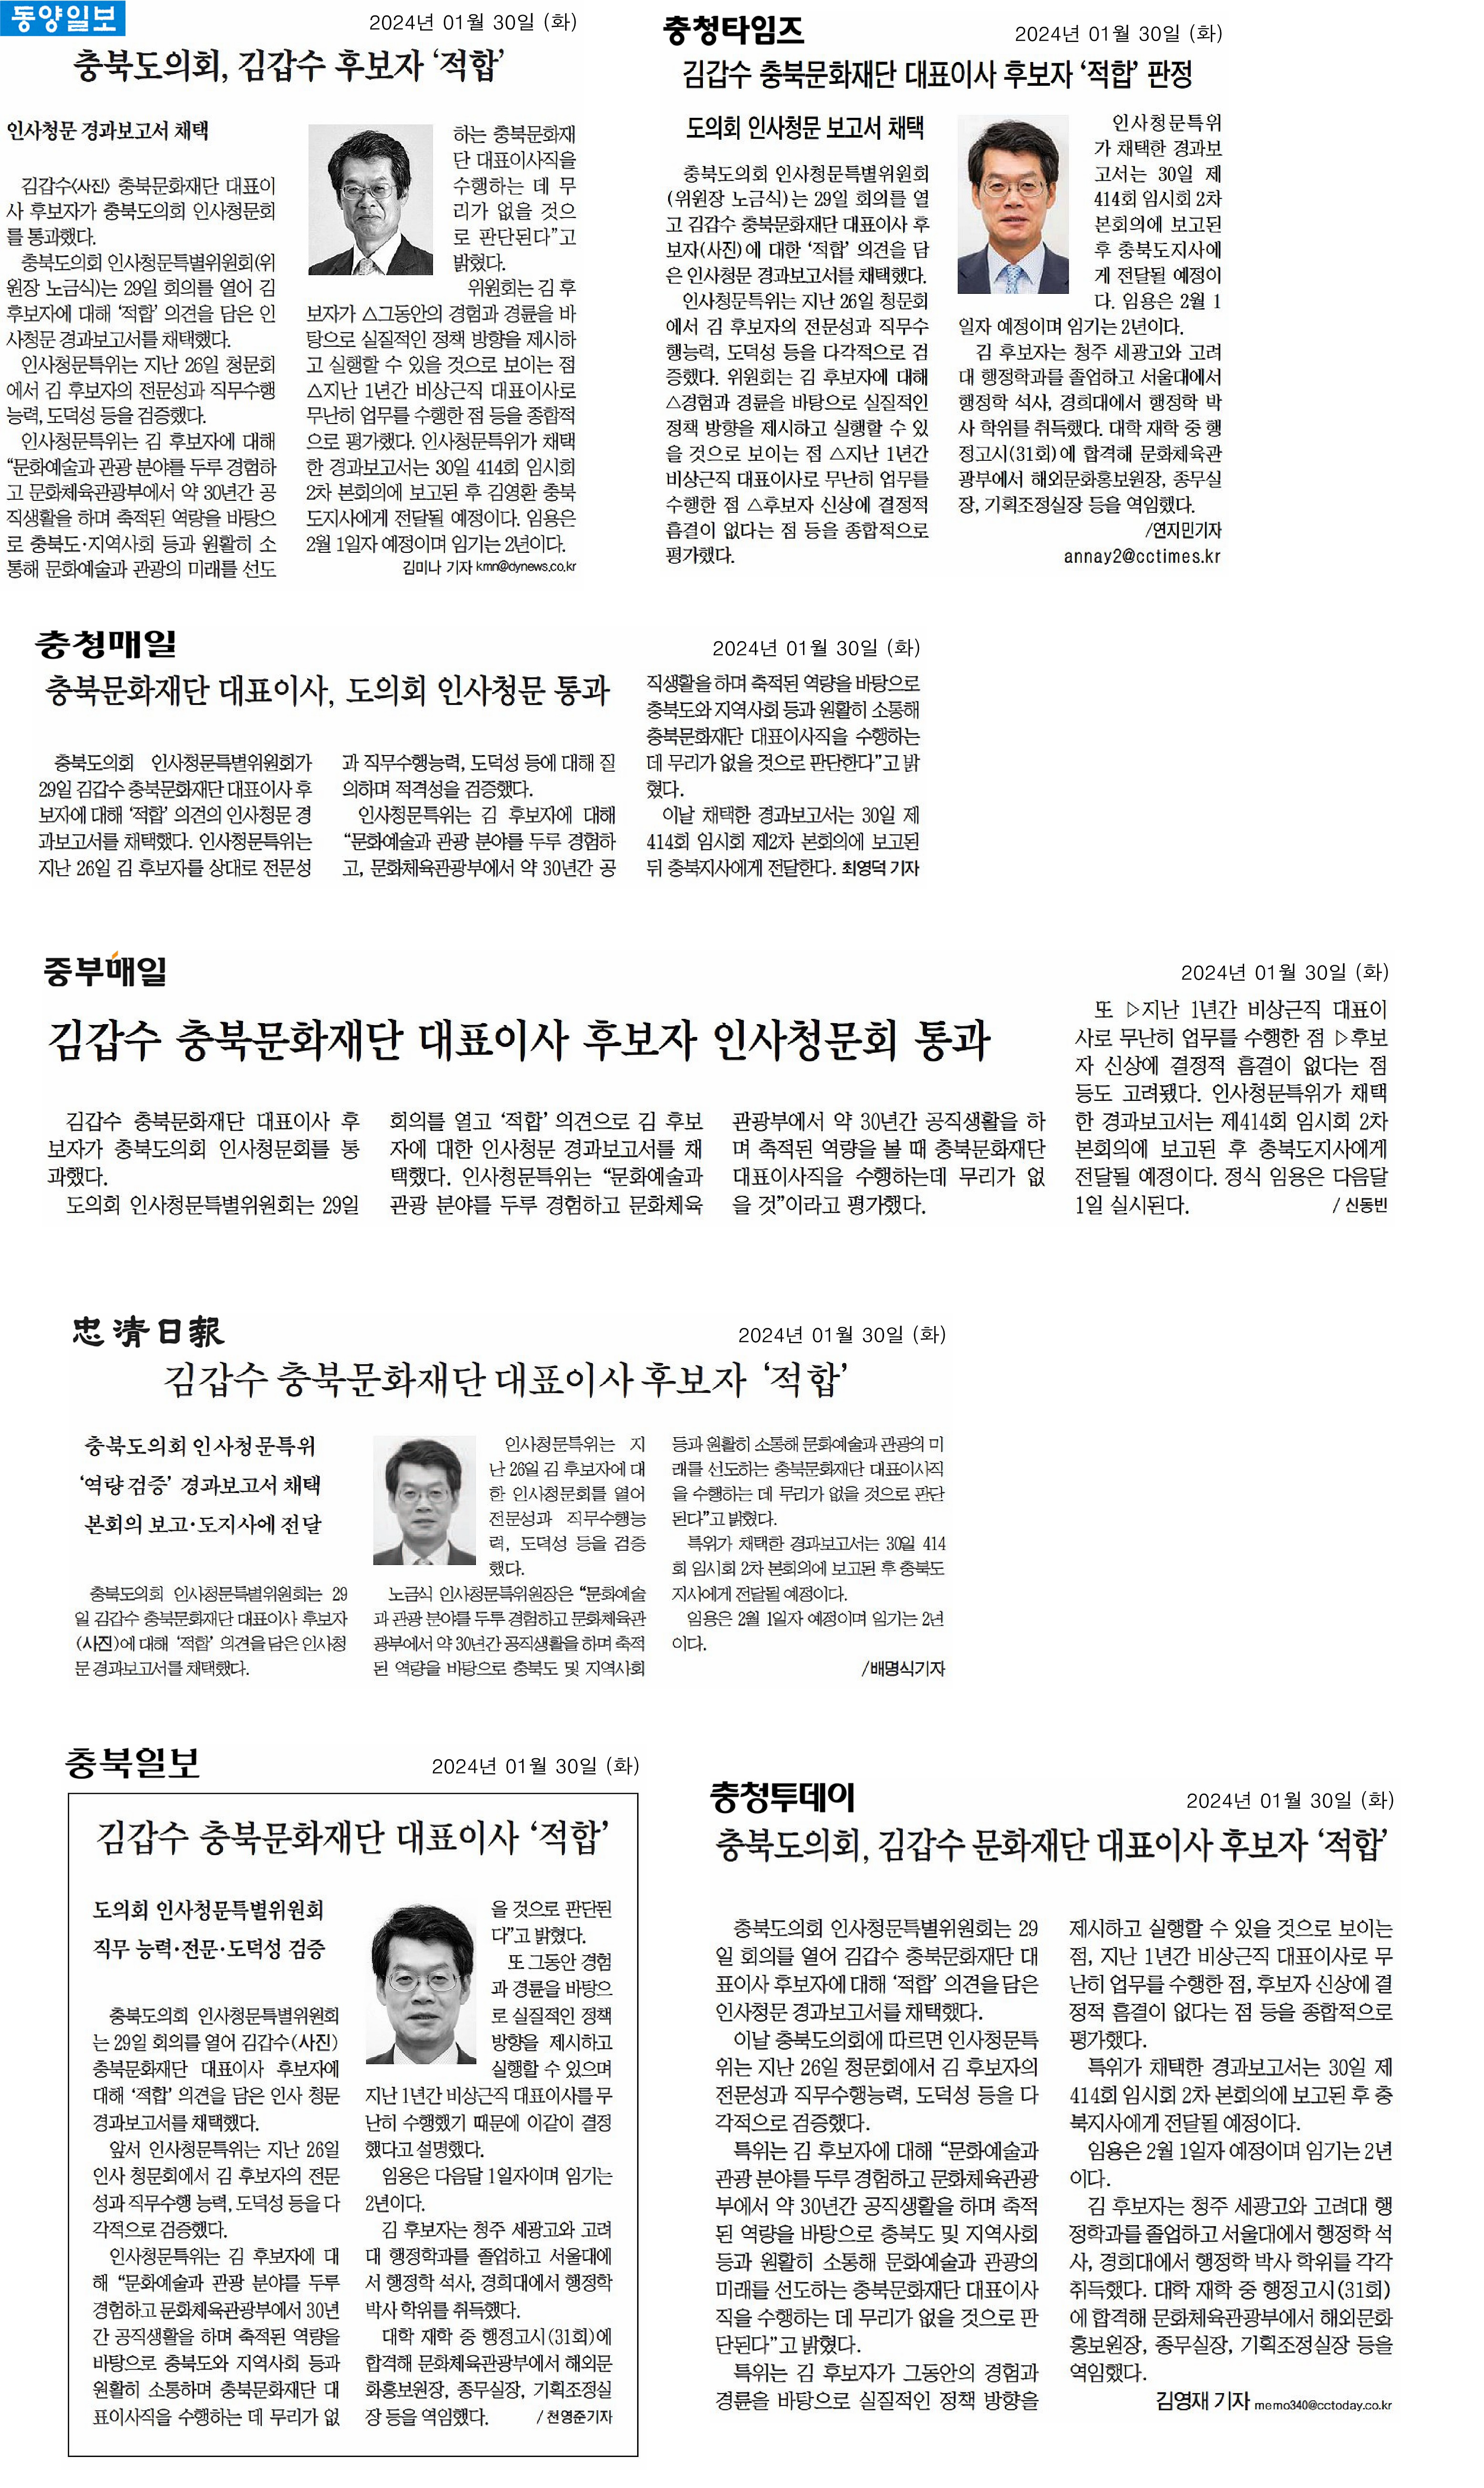 충북문화재단 대표이사 후보자 인사청문 결과 - 1